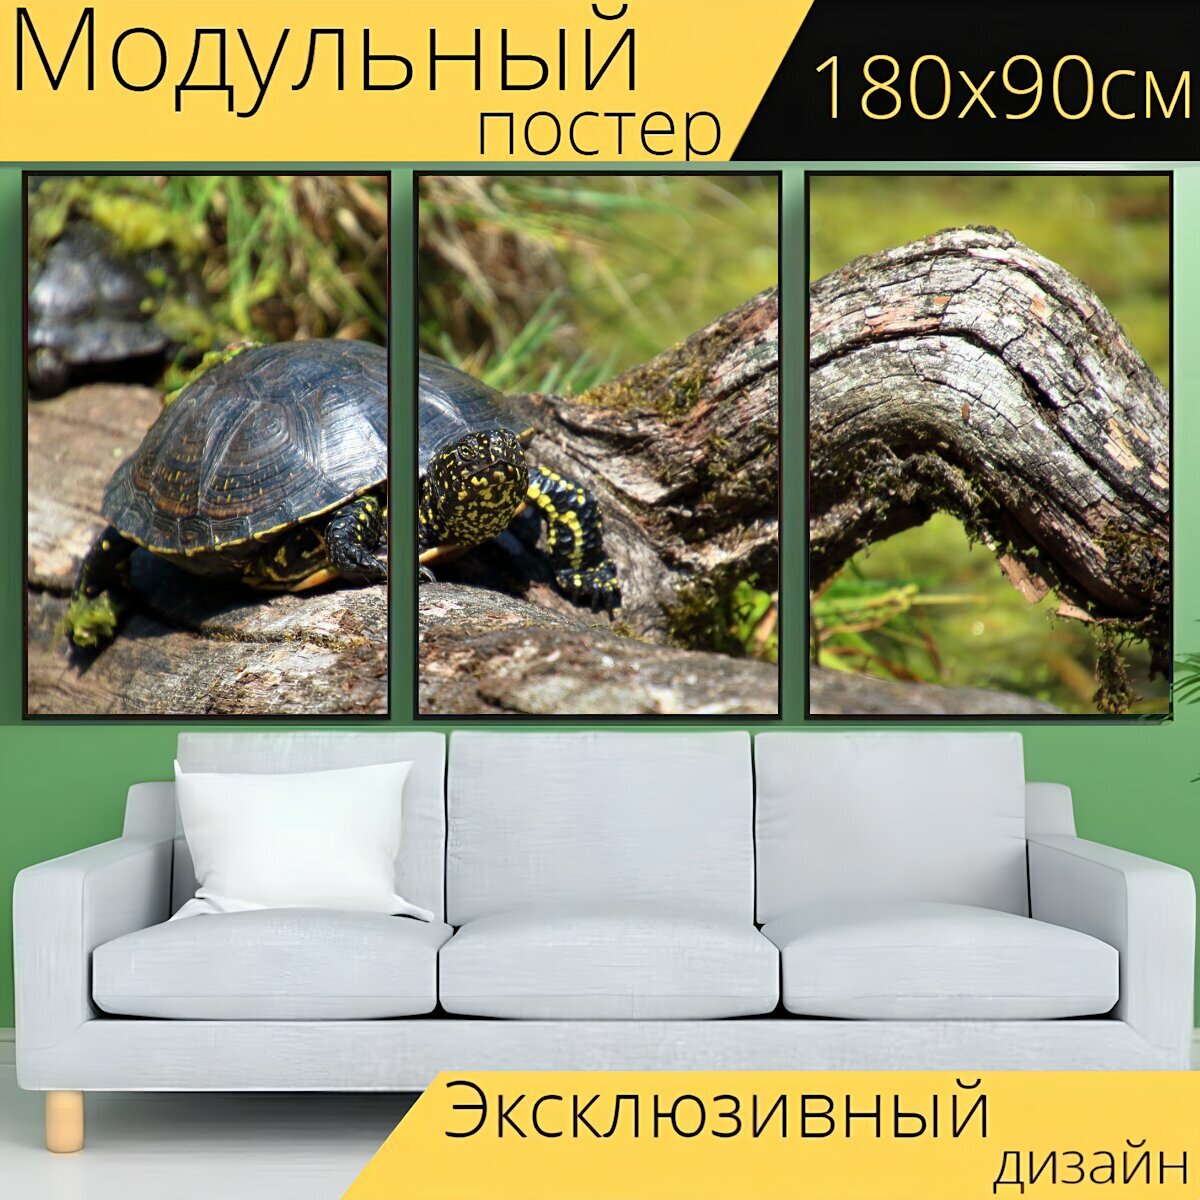 Модульный постер "Воды черепаха, чернить, ствол дерева" 180 x 90 см. для интерьера